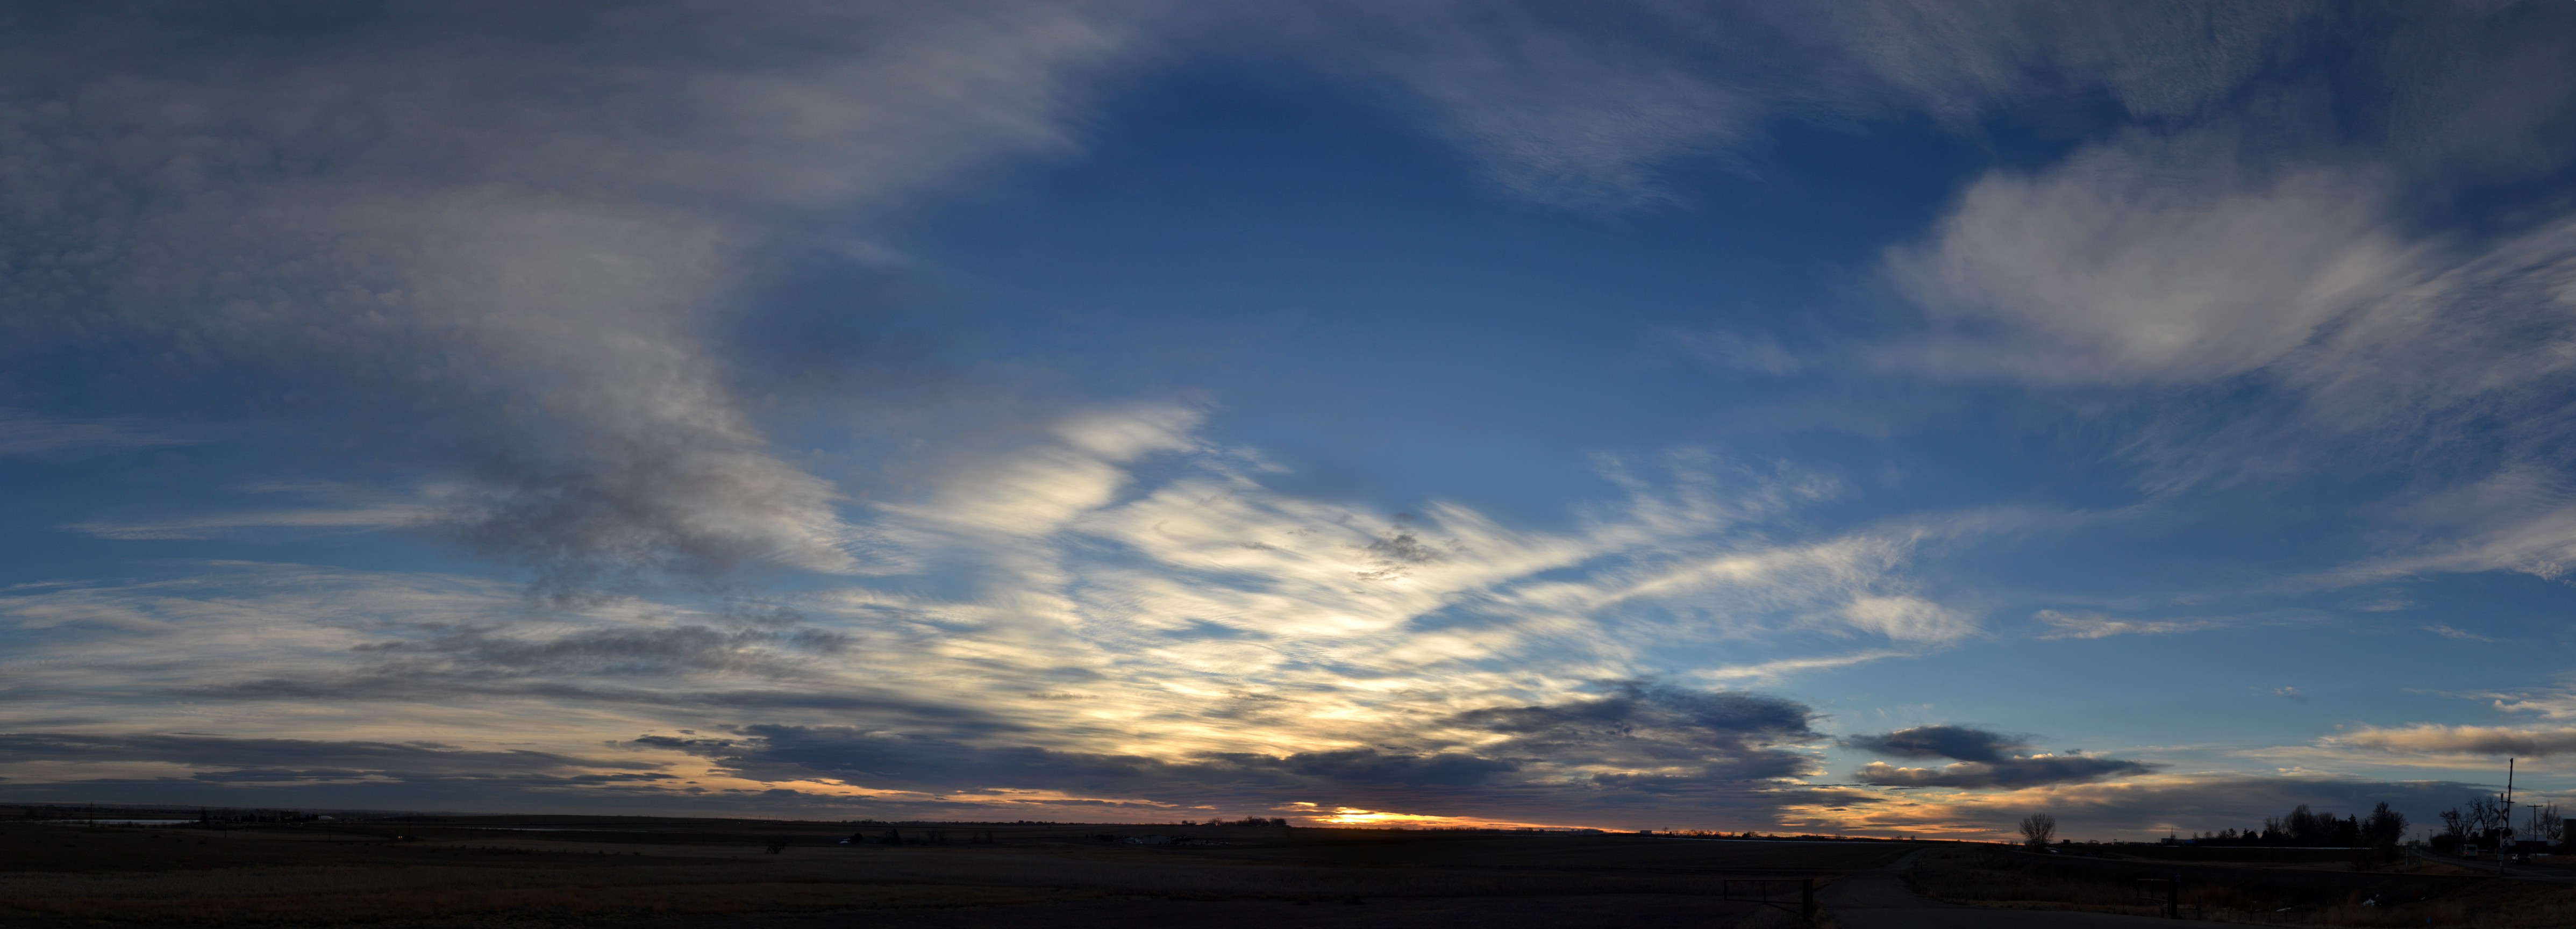 Morning Sunrise Cirrus Clouds Panoramic, 2013-01-24 - Sunrises ...